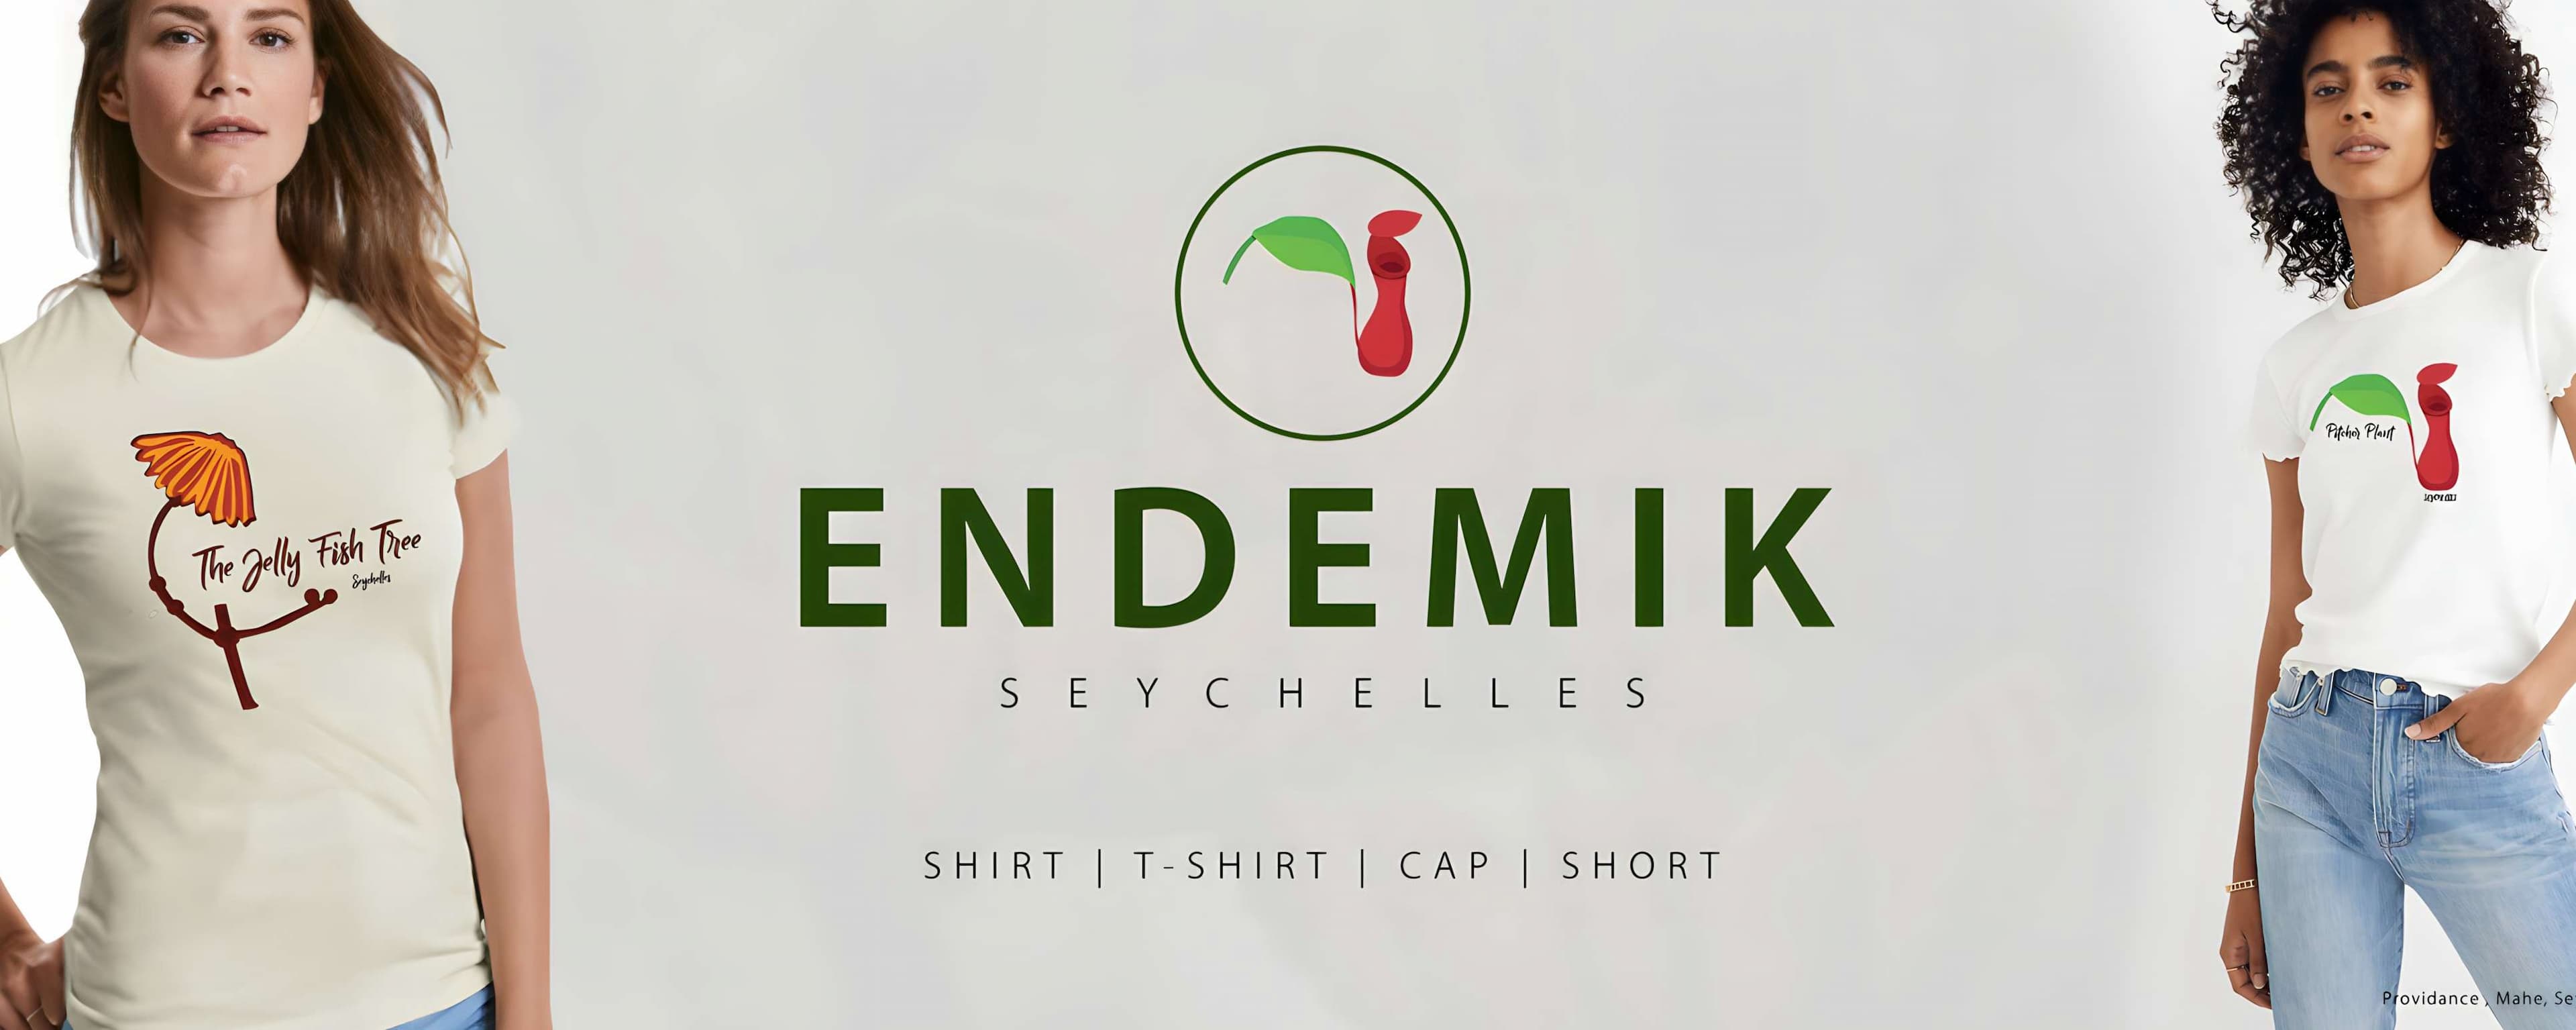 EndemiK Seychelles